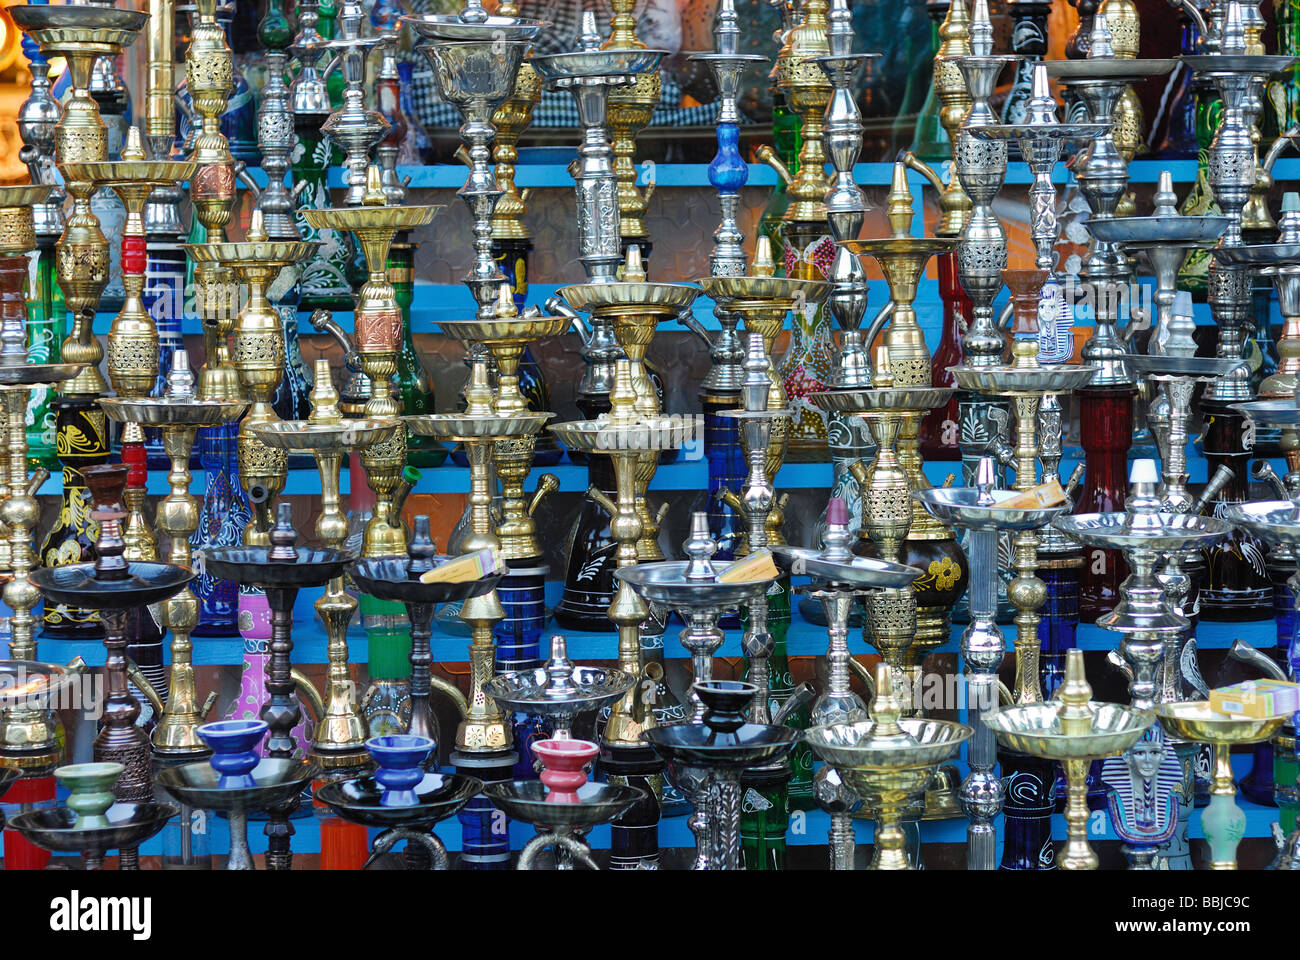 Conduites d'eau dans l'ancien marché Sharm el-Sheikh Égypte Banque D'Images